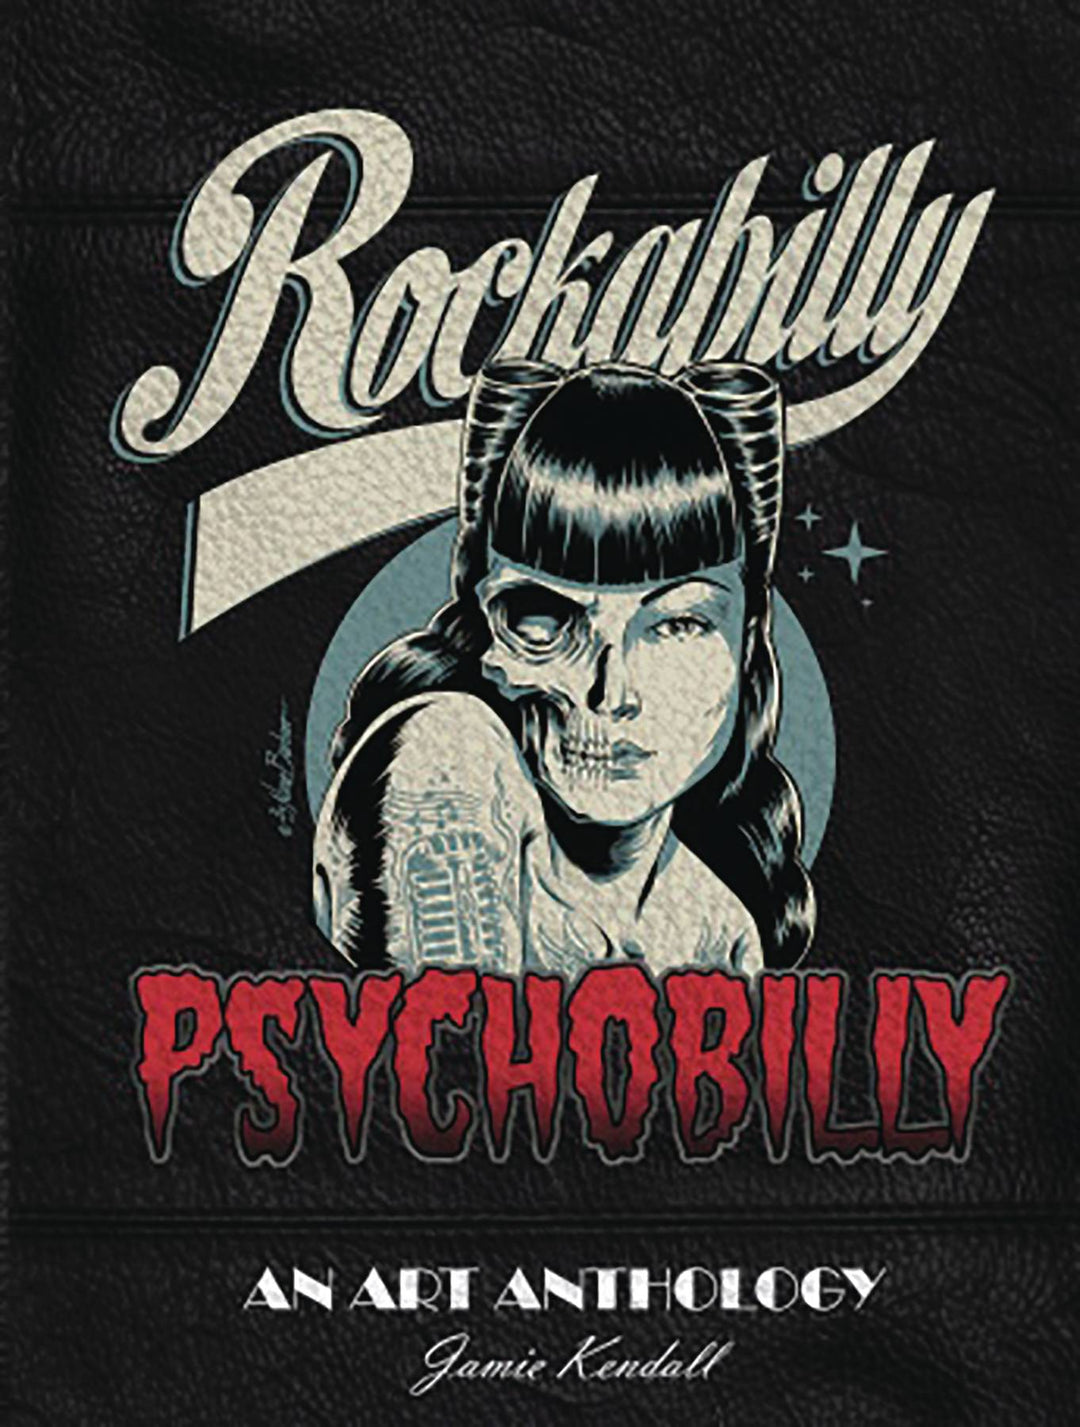 Rockabilly Psychobilly Art Anthology Hardcover (Mature)